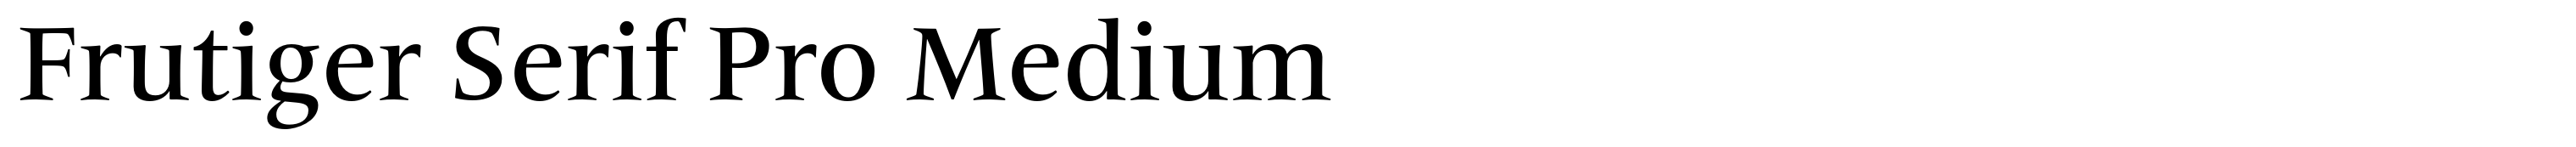 Frutiger Serif Pro Medium